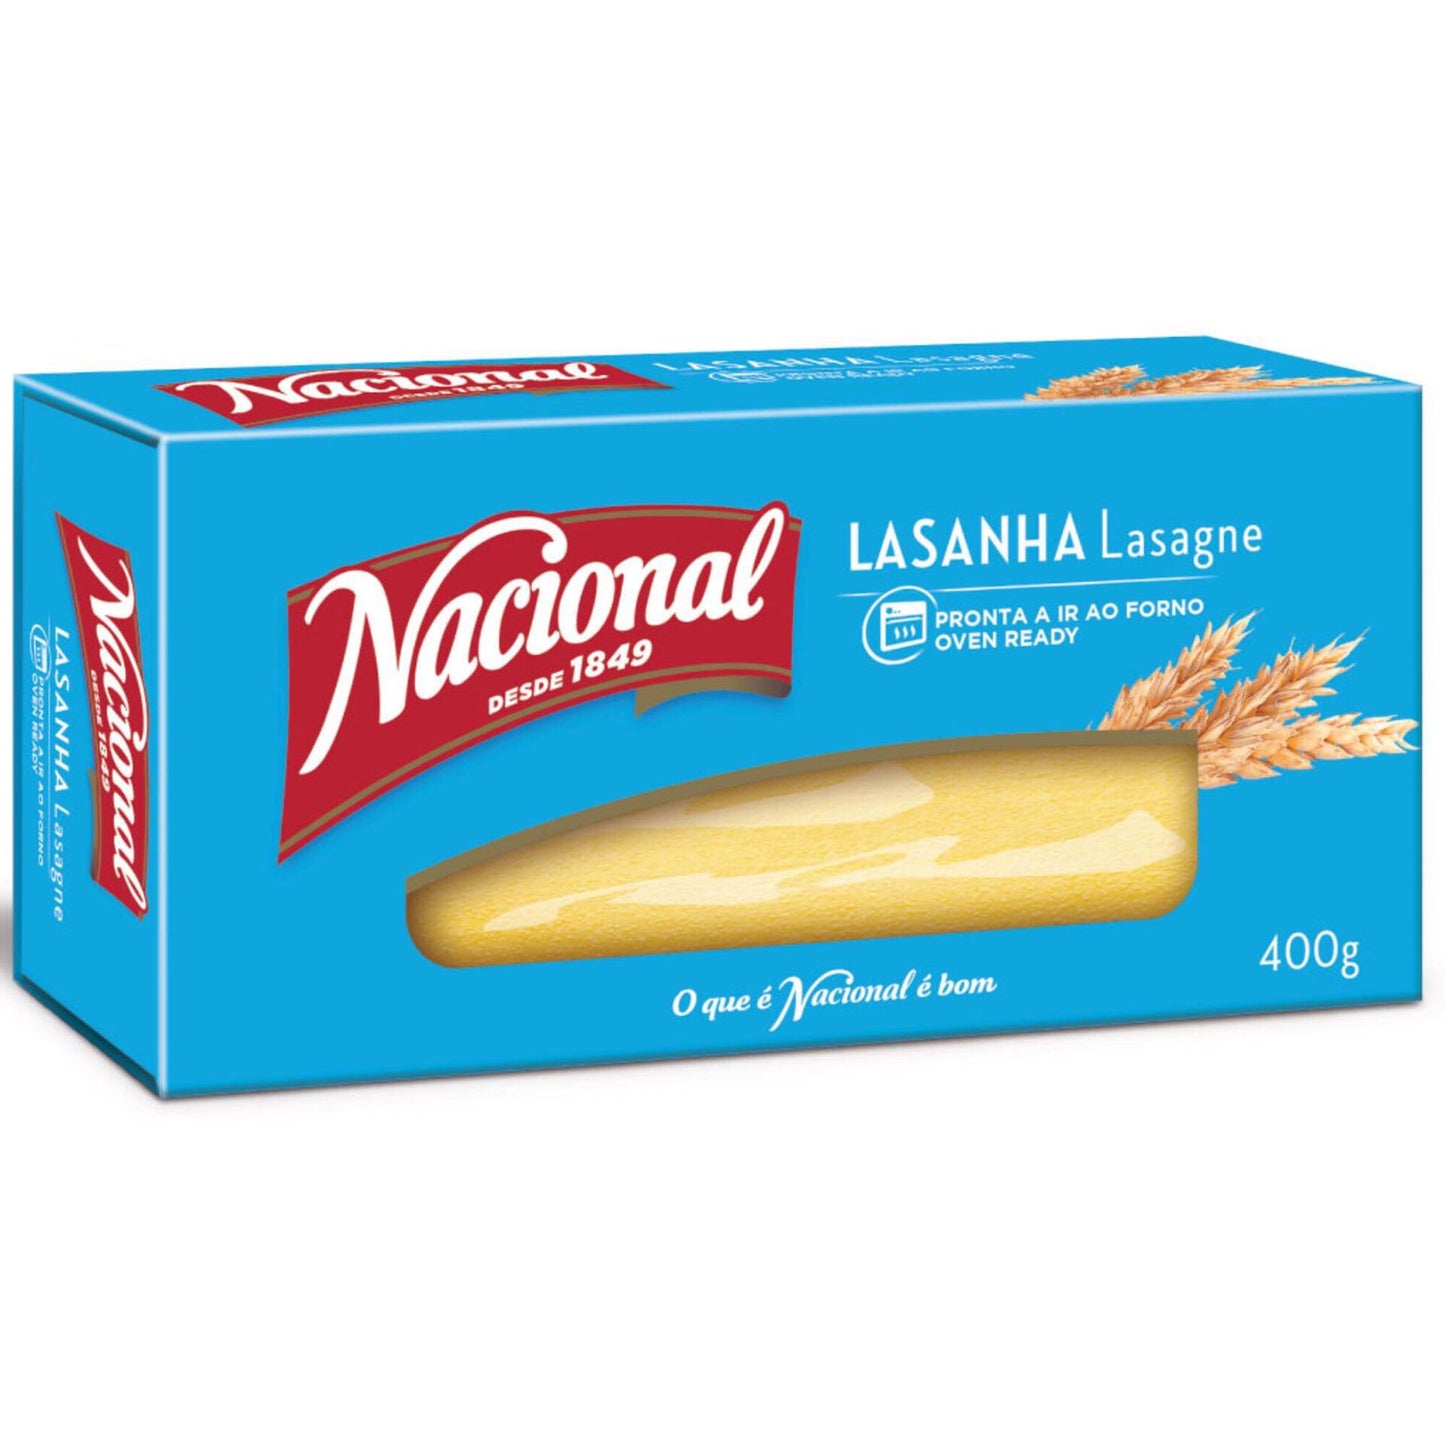 Lasagna Pasta from Nacional 400g